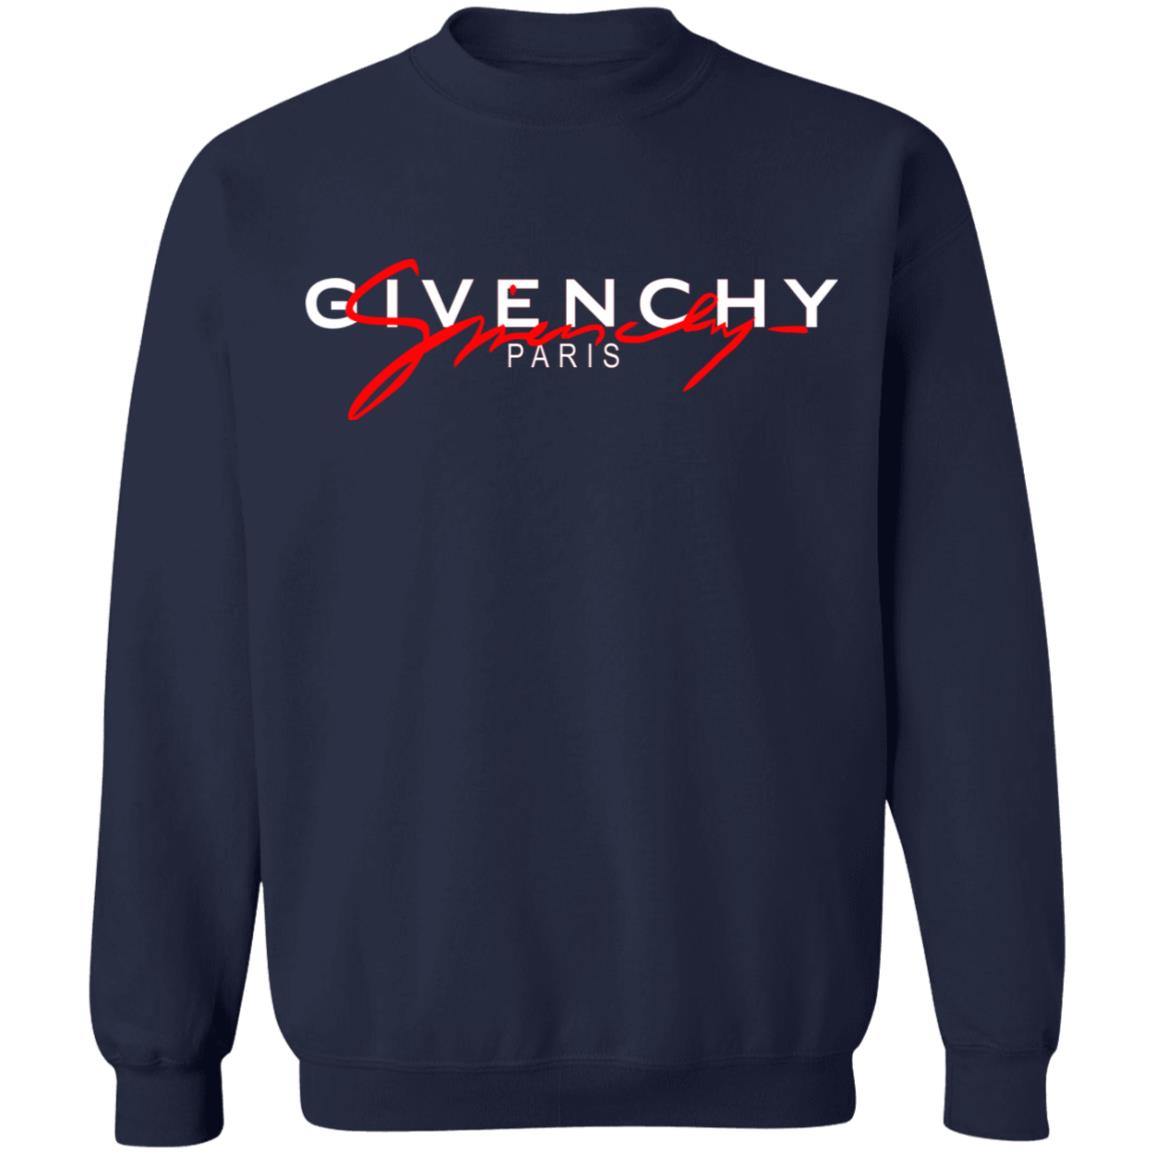 Givenchy Givenchy Paris T-Shirts, Hoodies, Sweater | El Real Tex-Mex